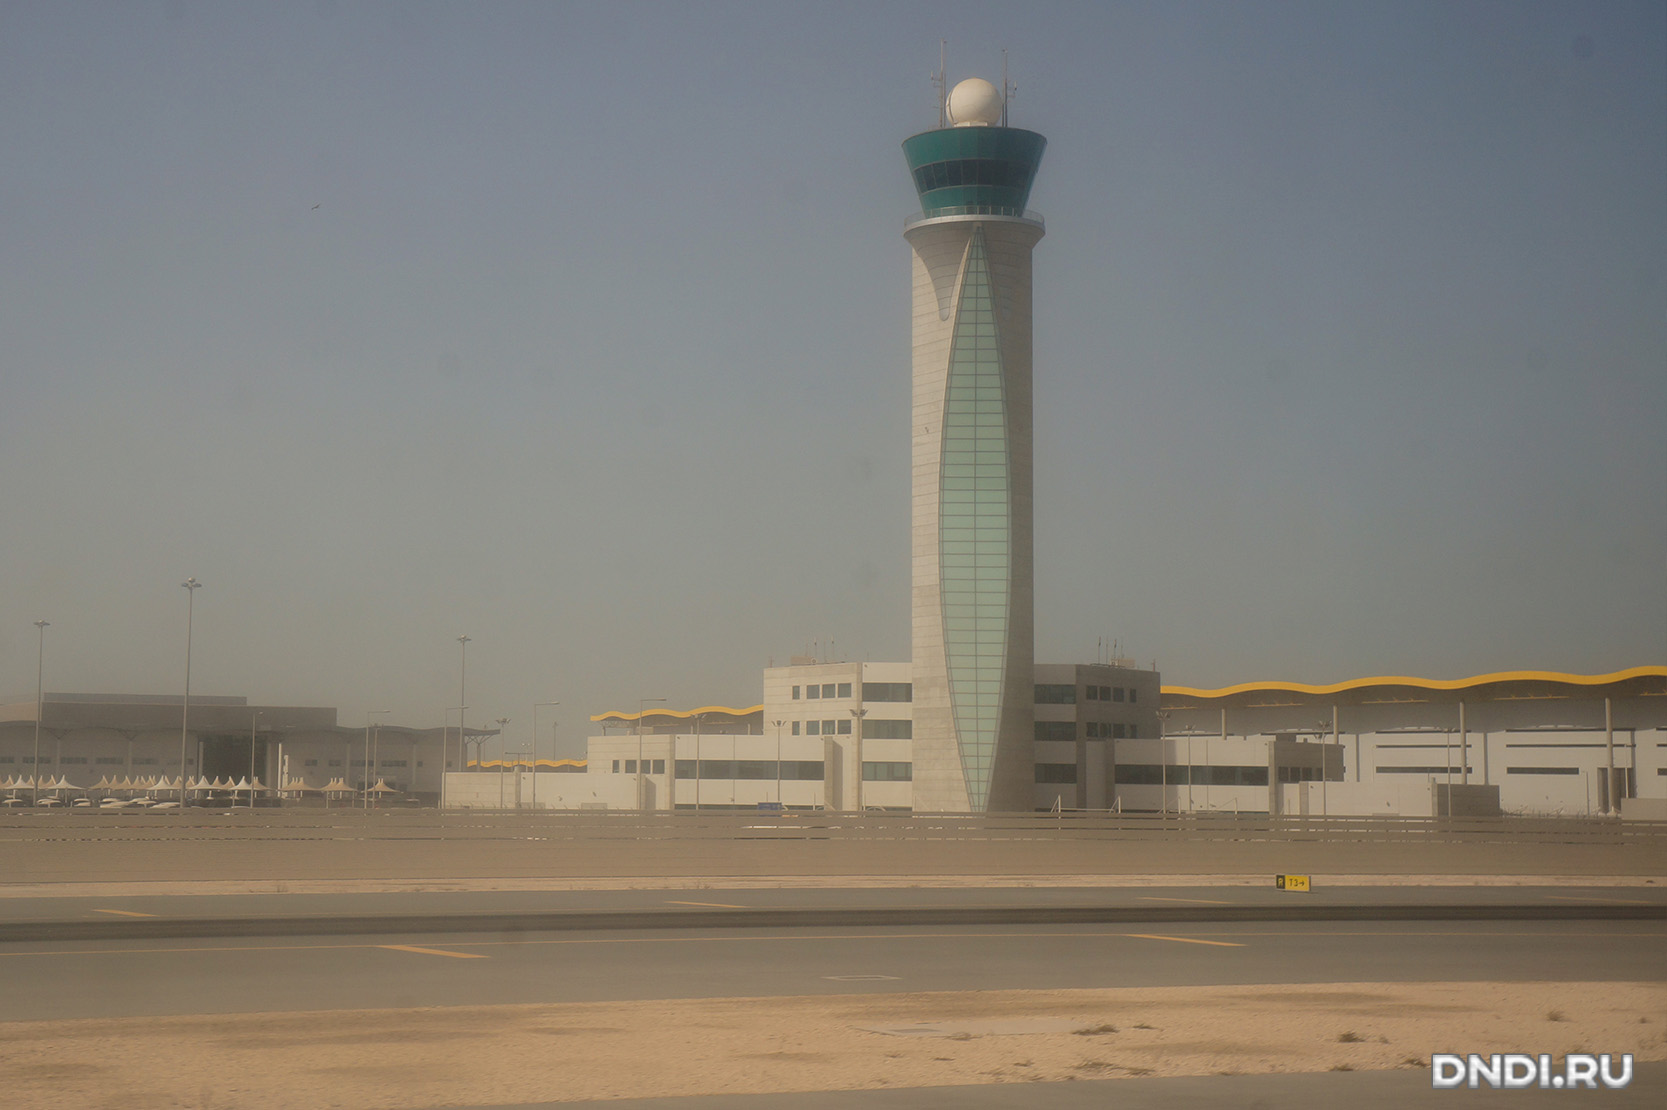 qatarairways027